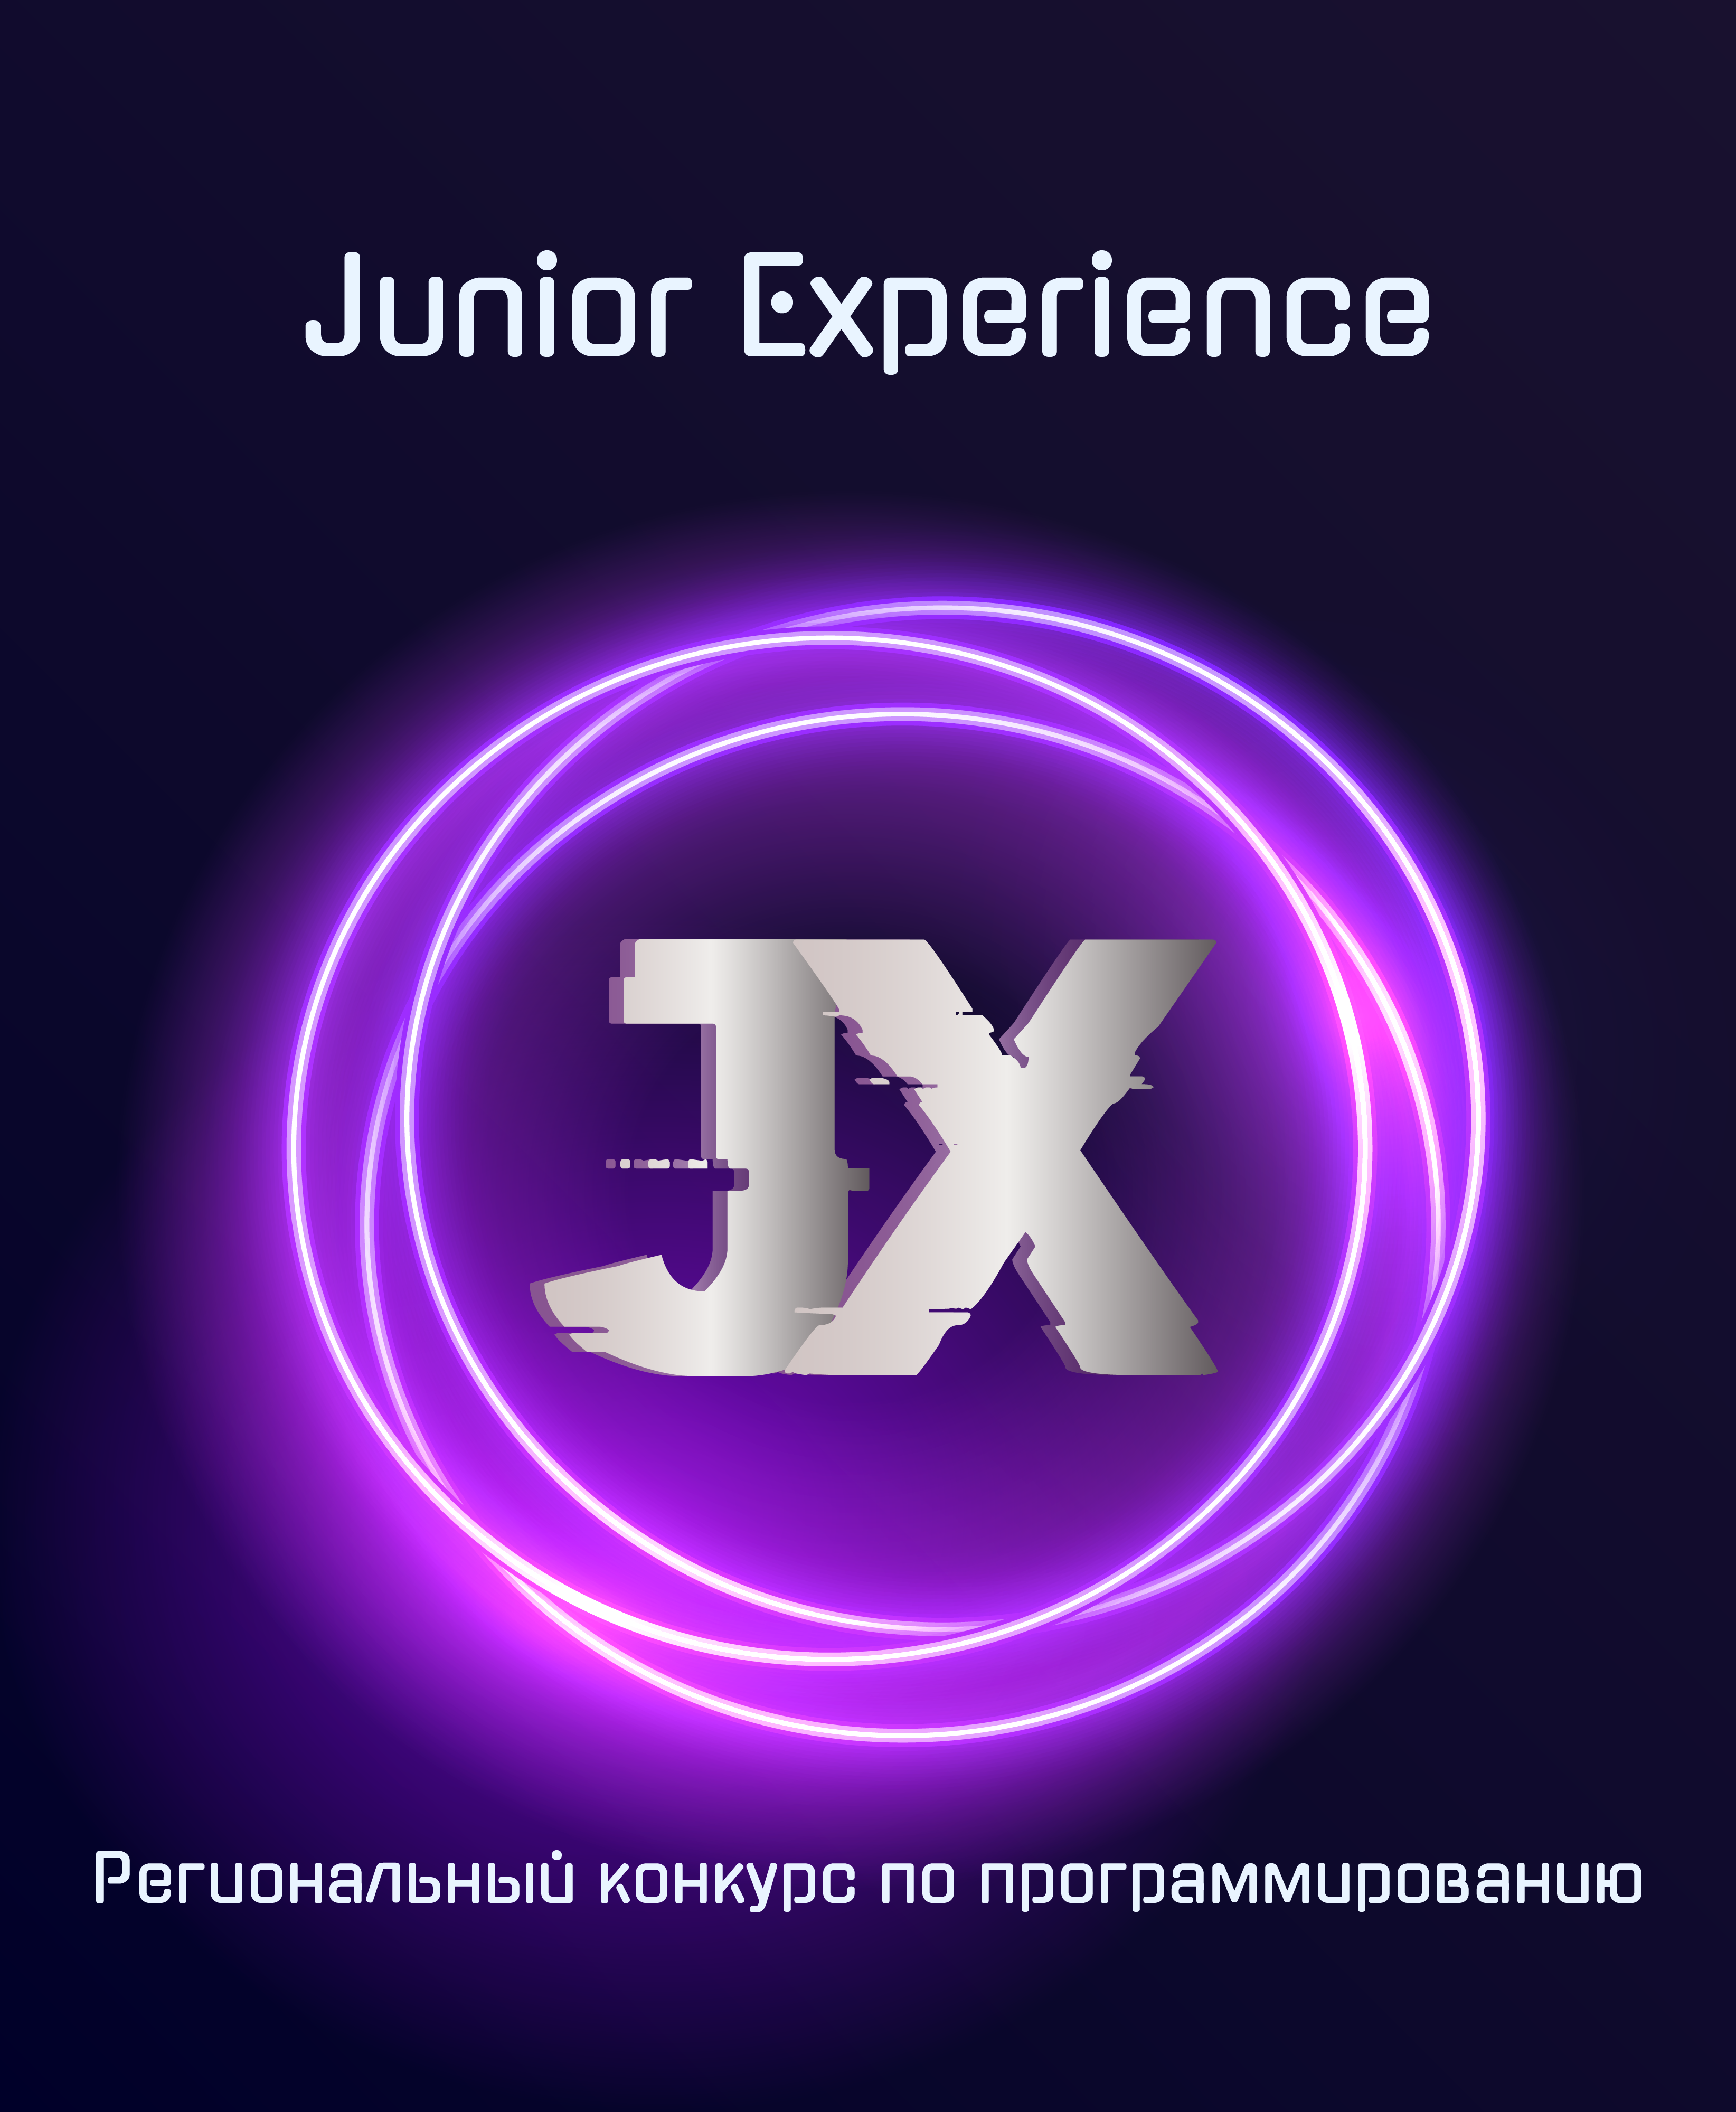 Junior Experience